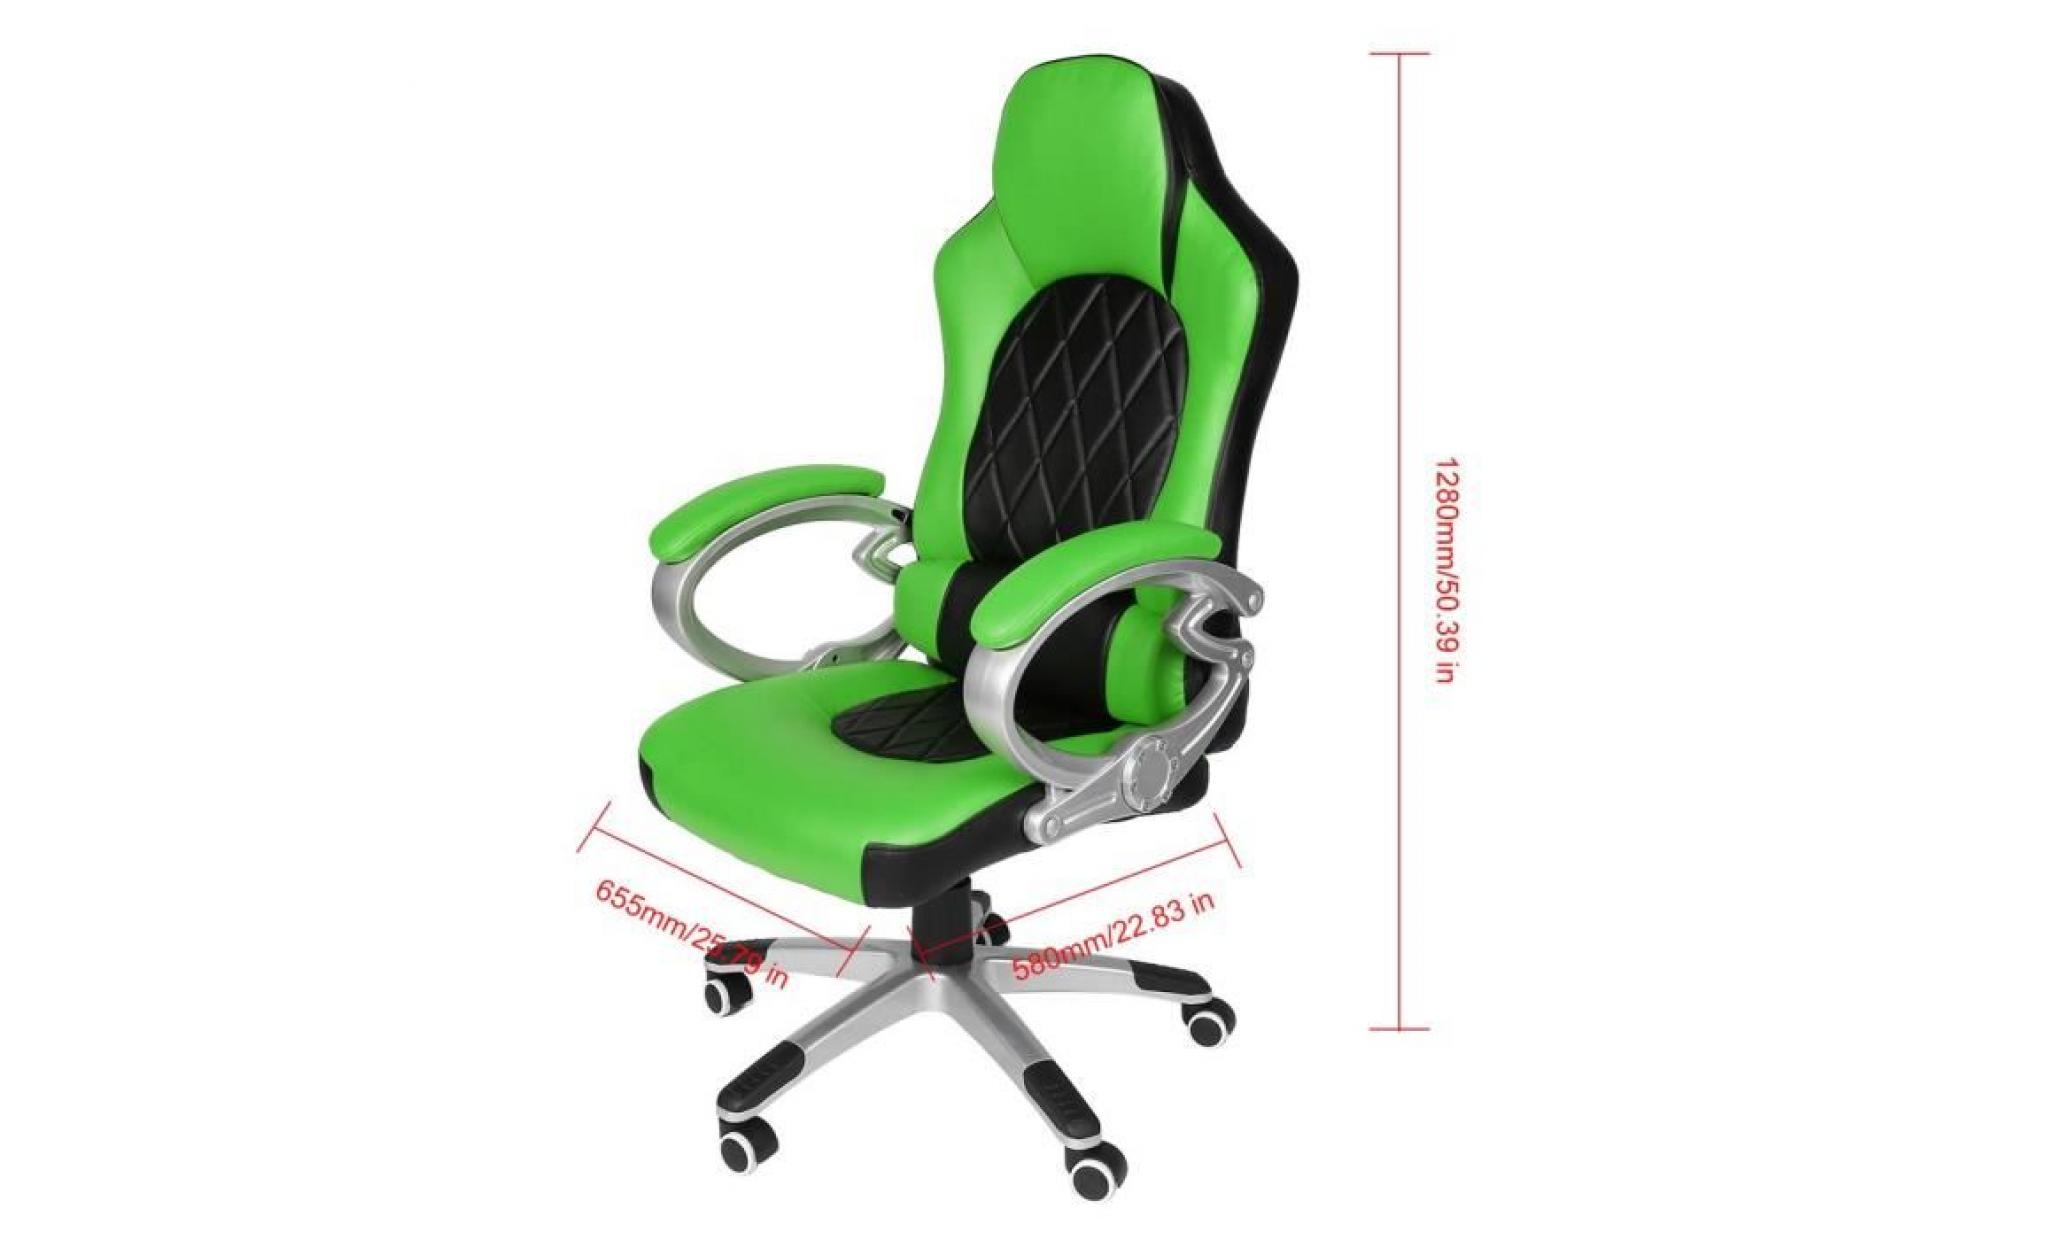 fauateuil gaming fauteuil de jeu vidéo chaise de bureau de maison vert noir pas cher